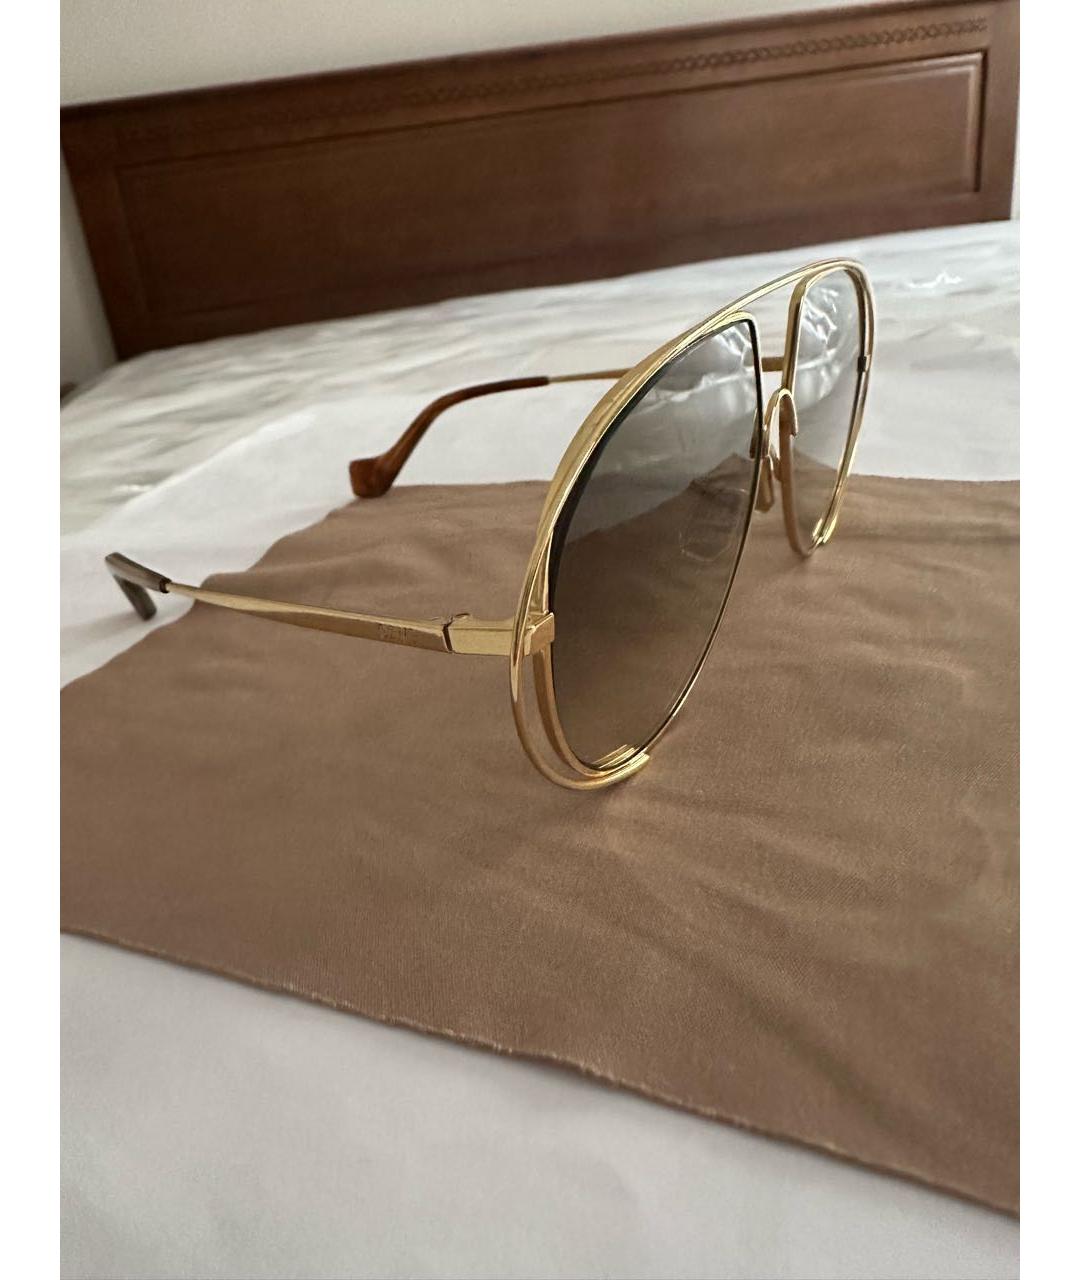 LOEWE Золотые металлические солнцезащитные очки, фото 2